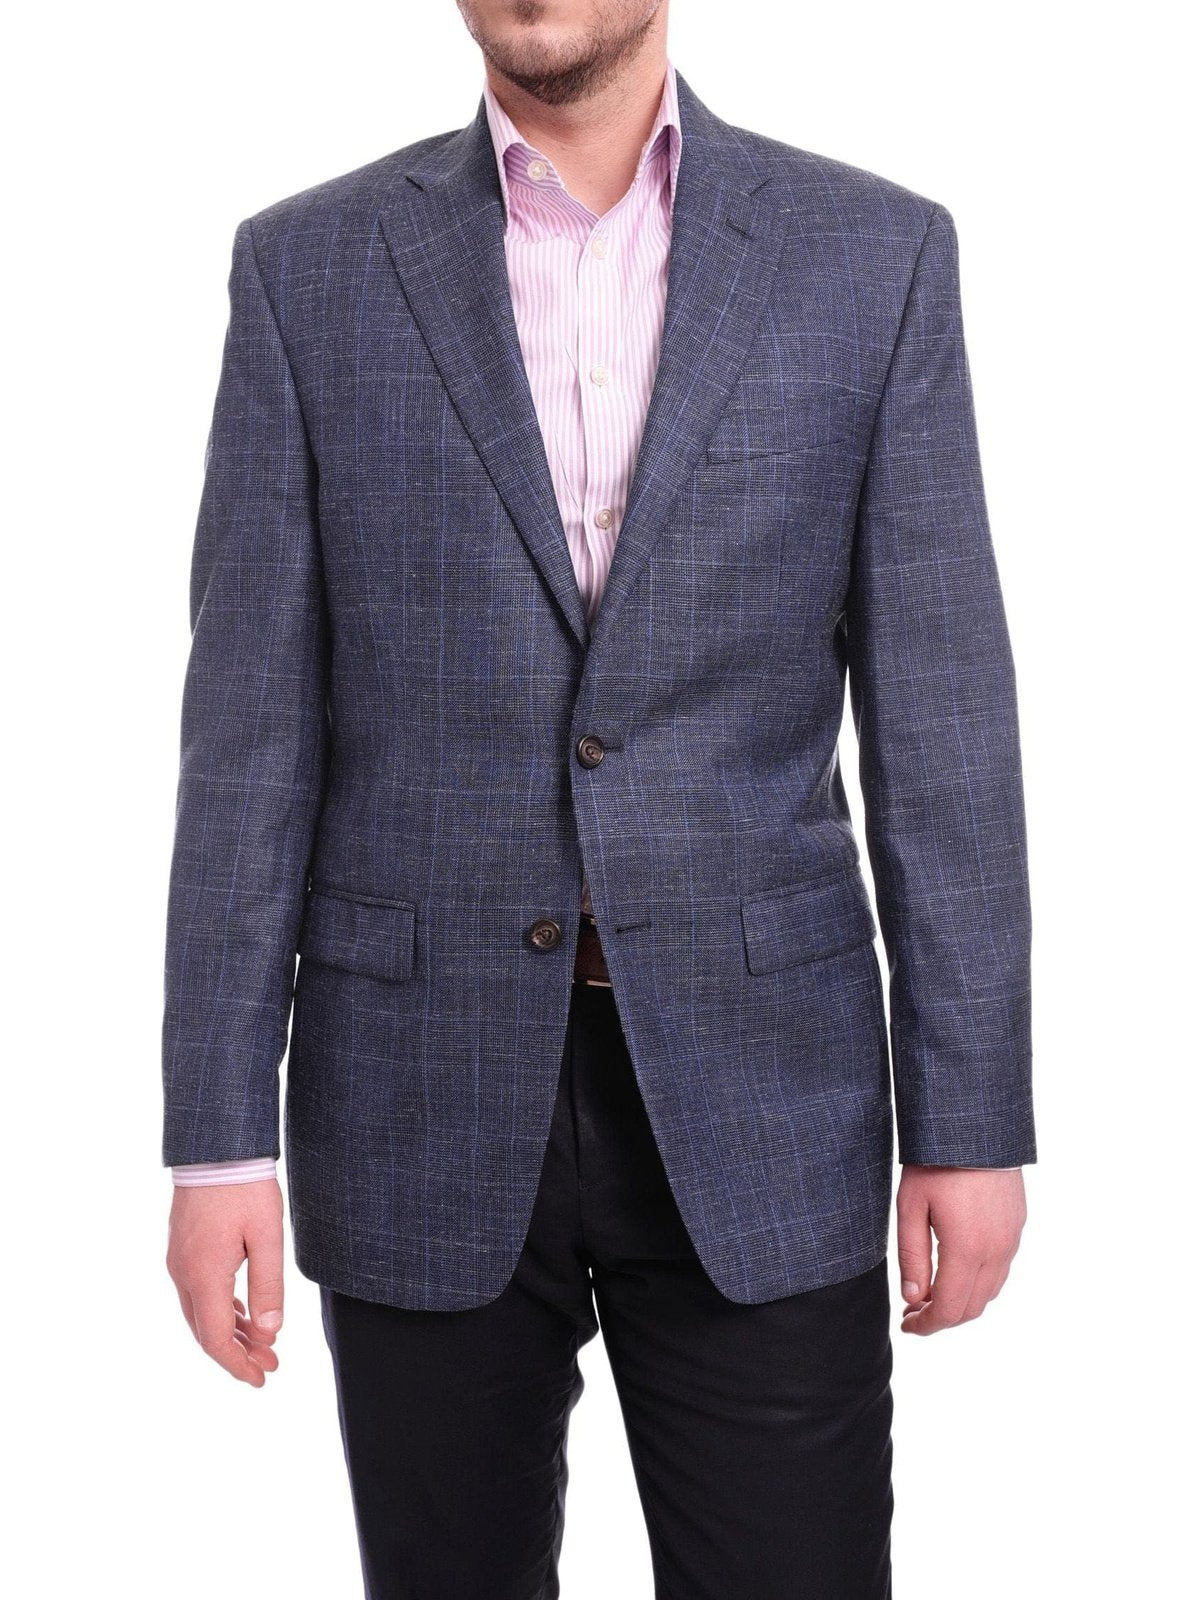 Ralph Lauren BLAZERS Ralph Lauren Classic Fit Blue Plaid Two Button Wool Silk Blend Blazer Sportcoat